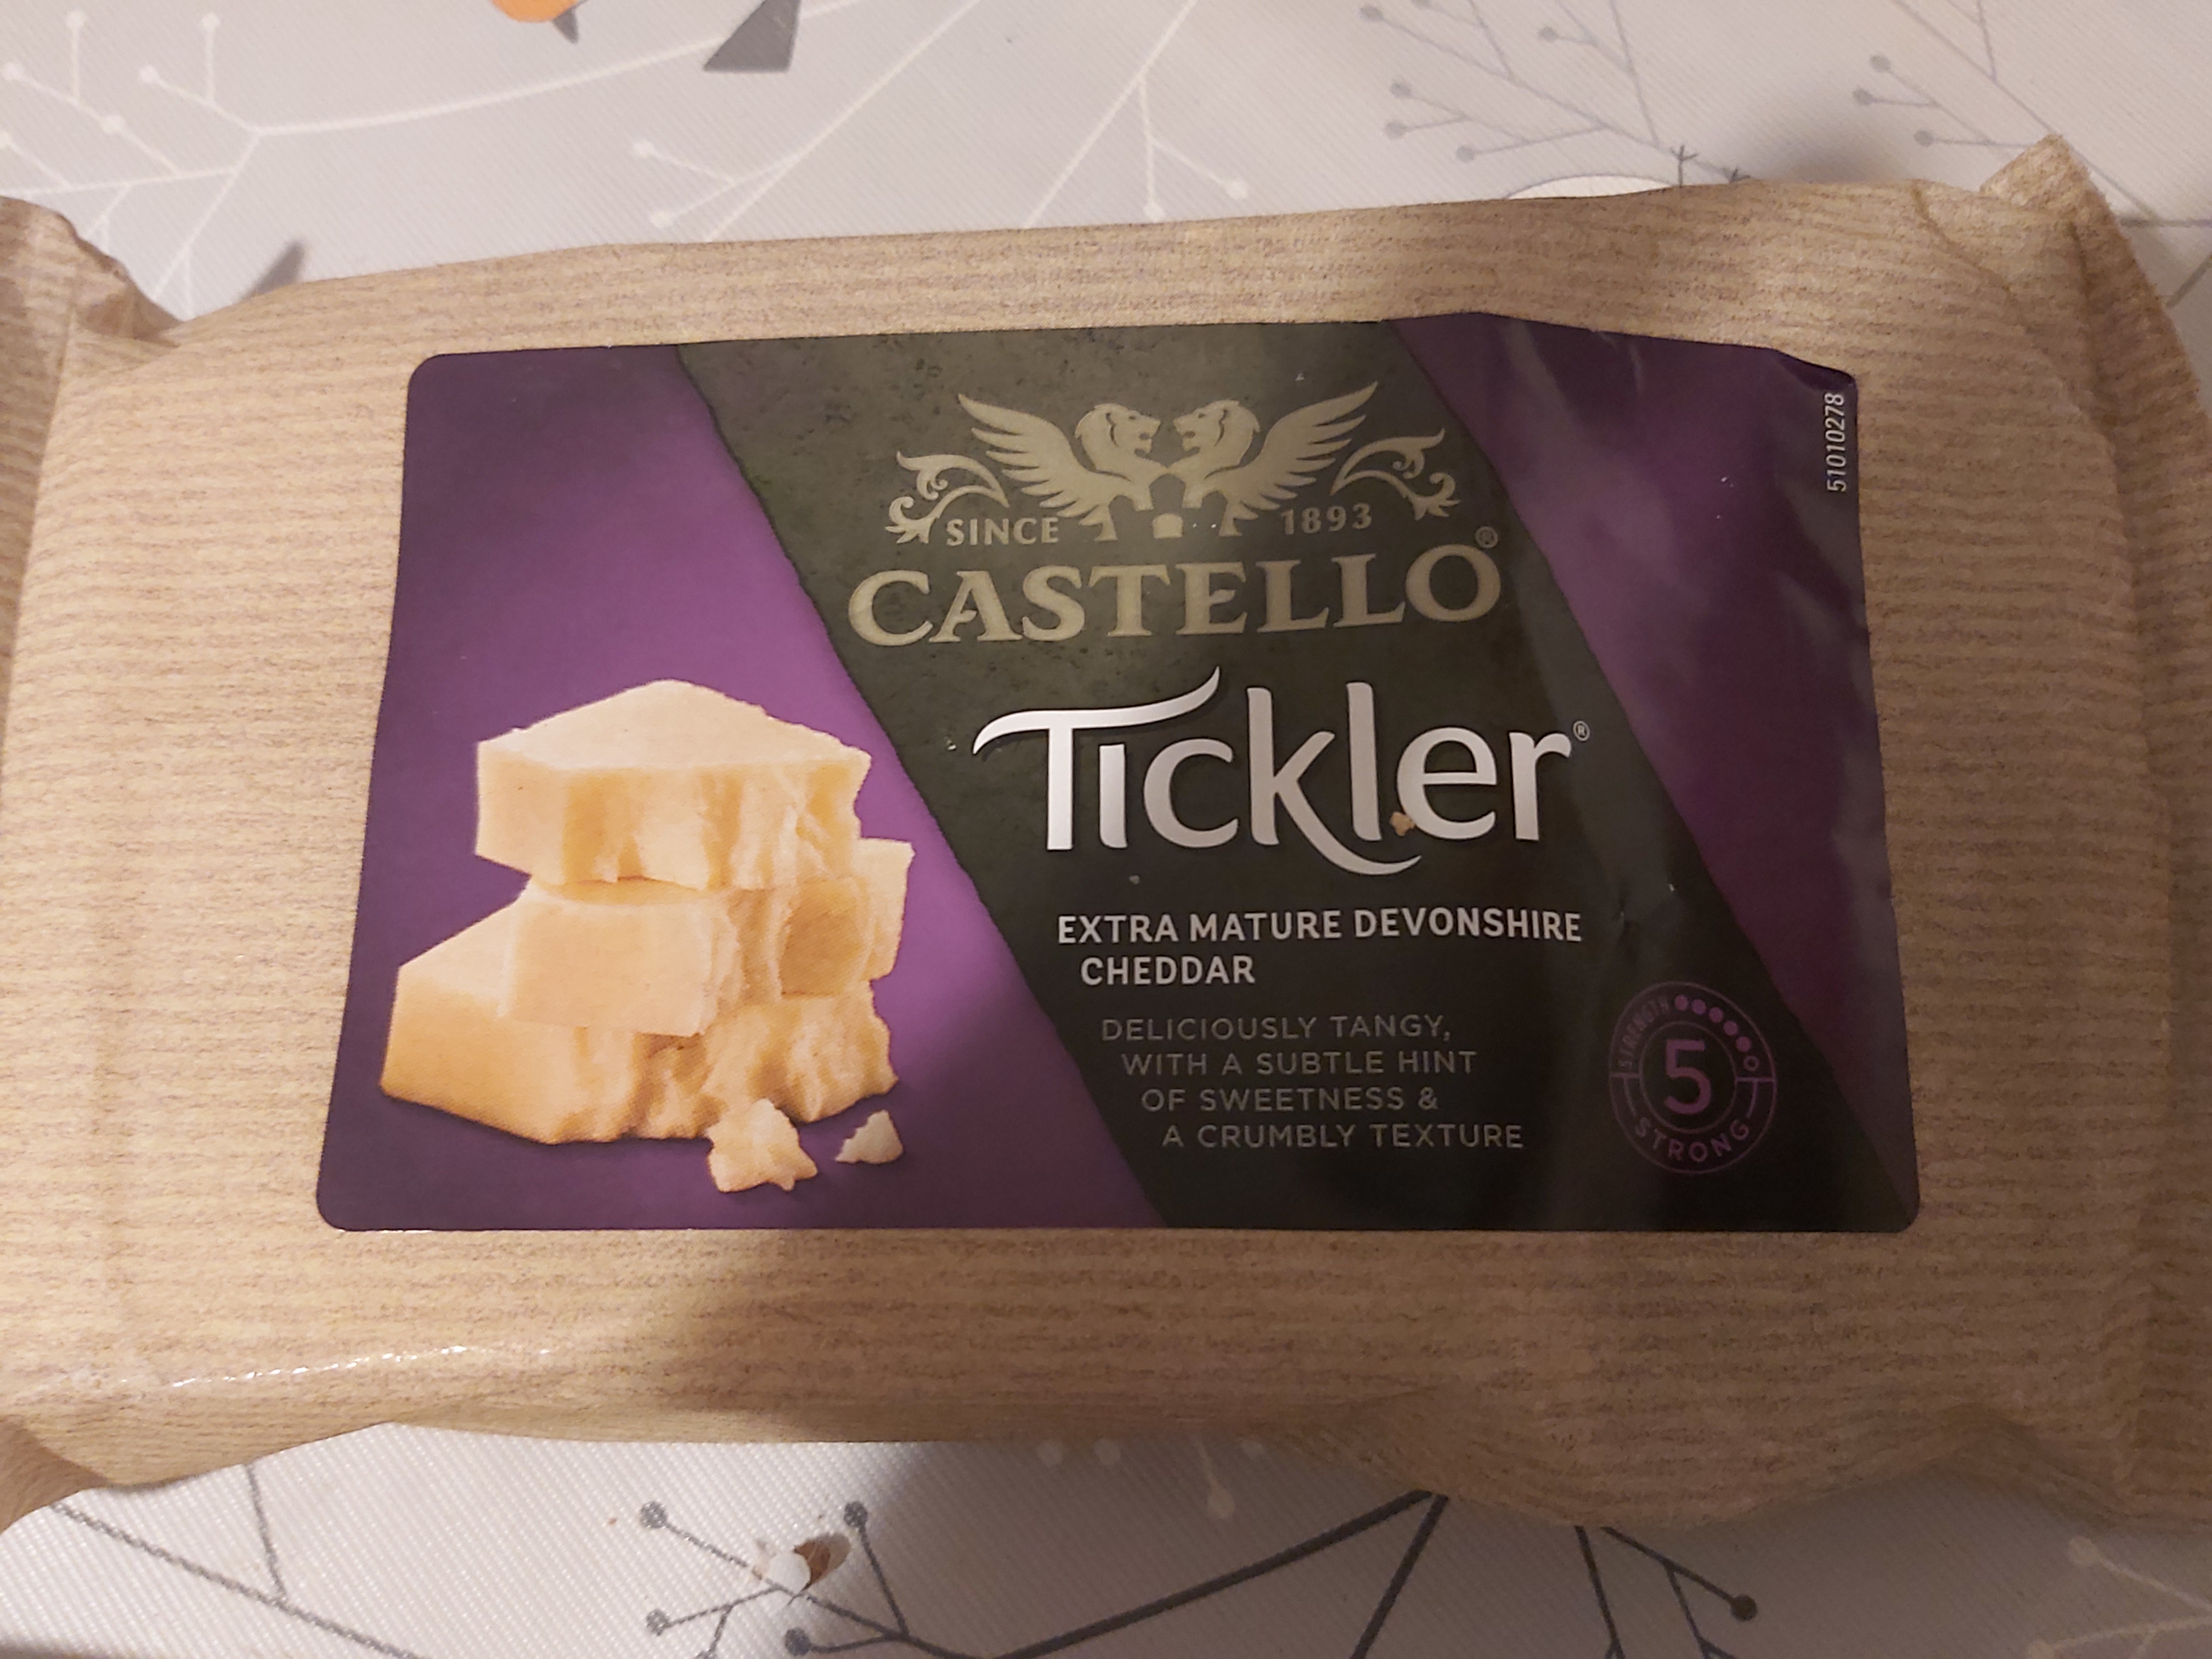 Castello Tickler Extra Mature